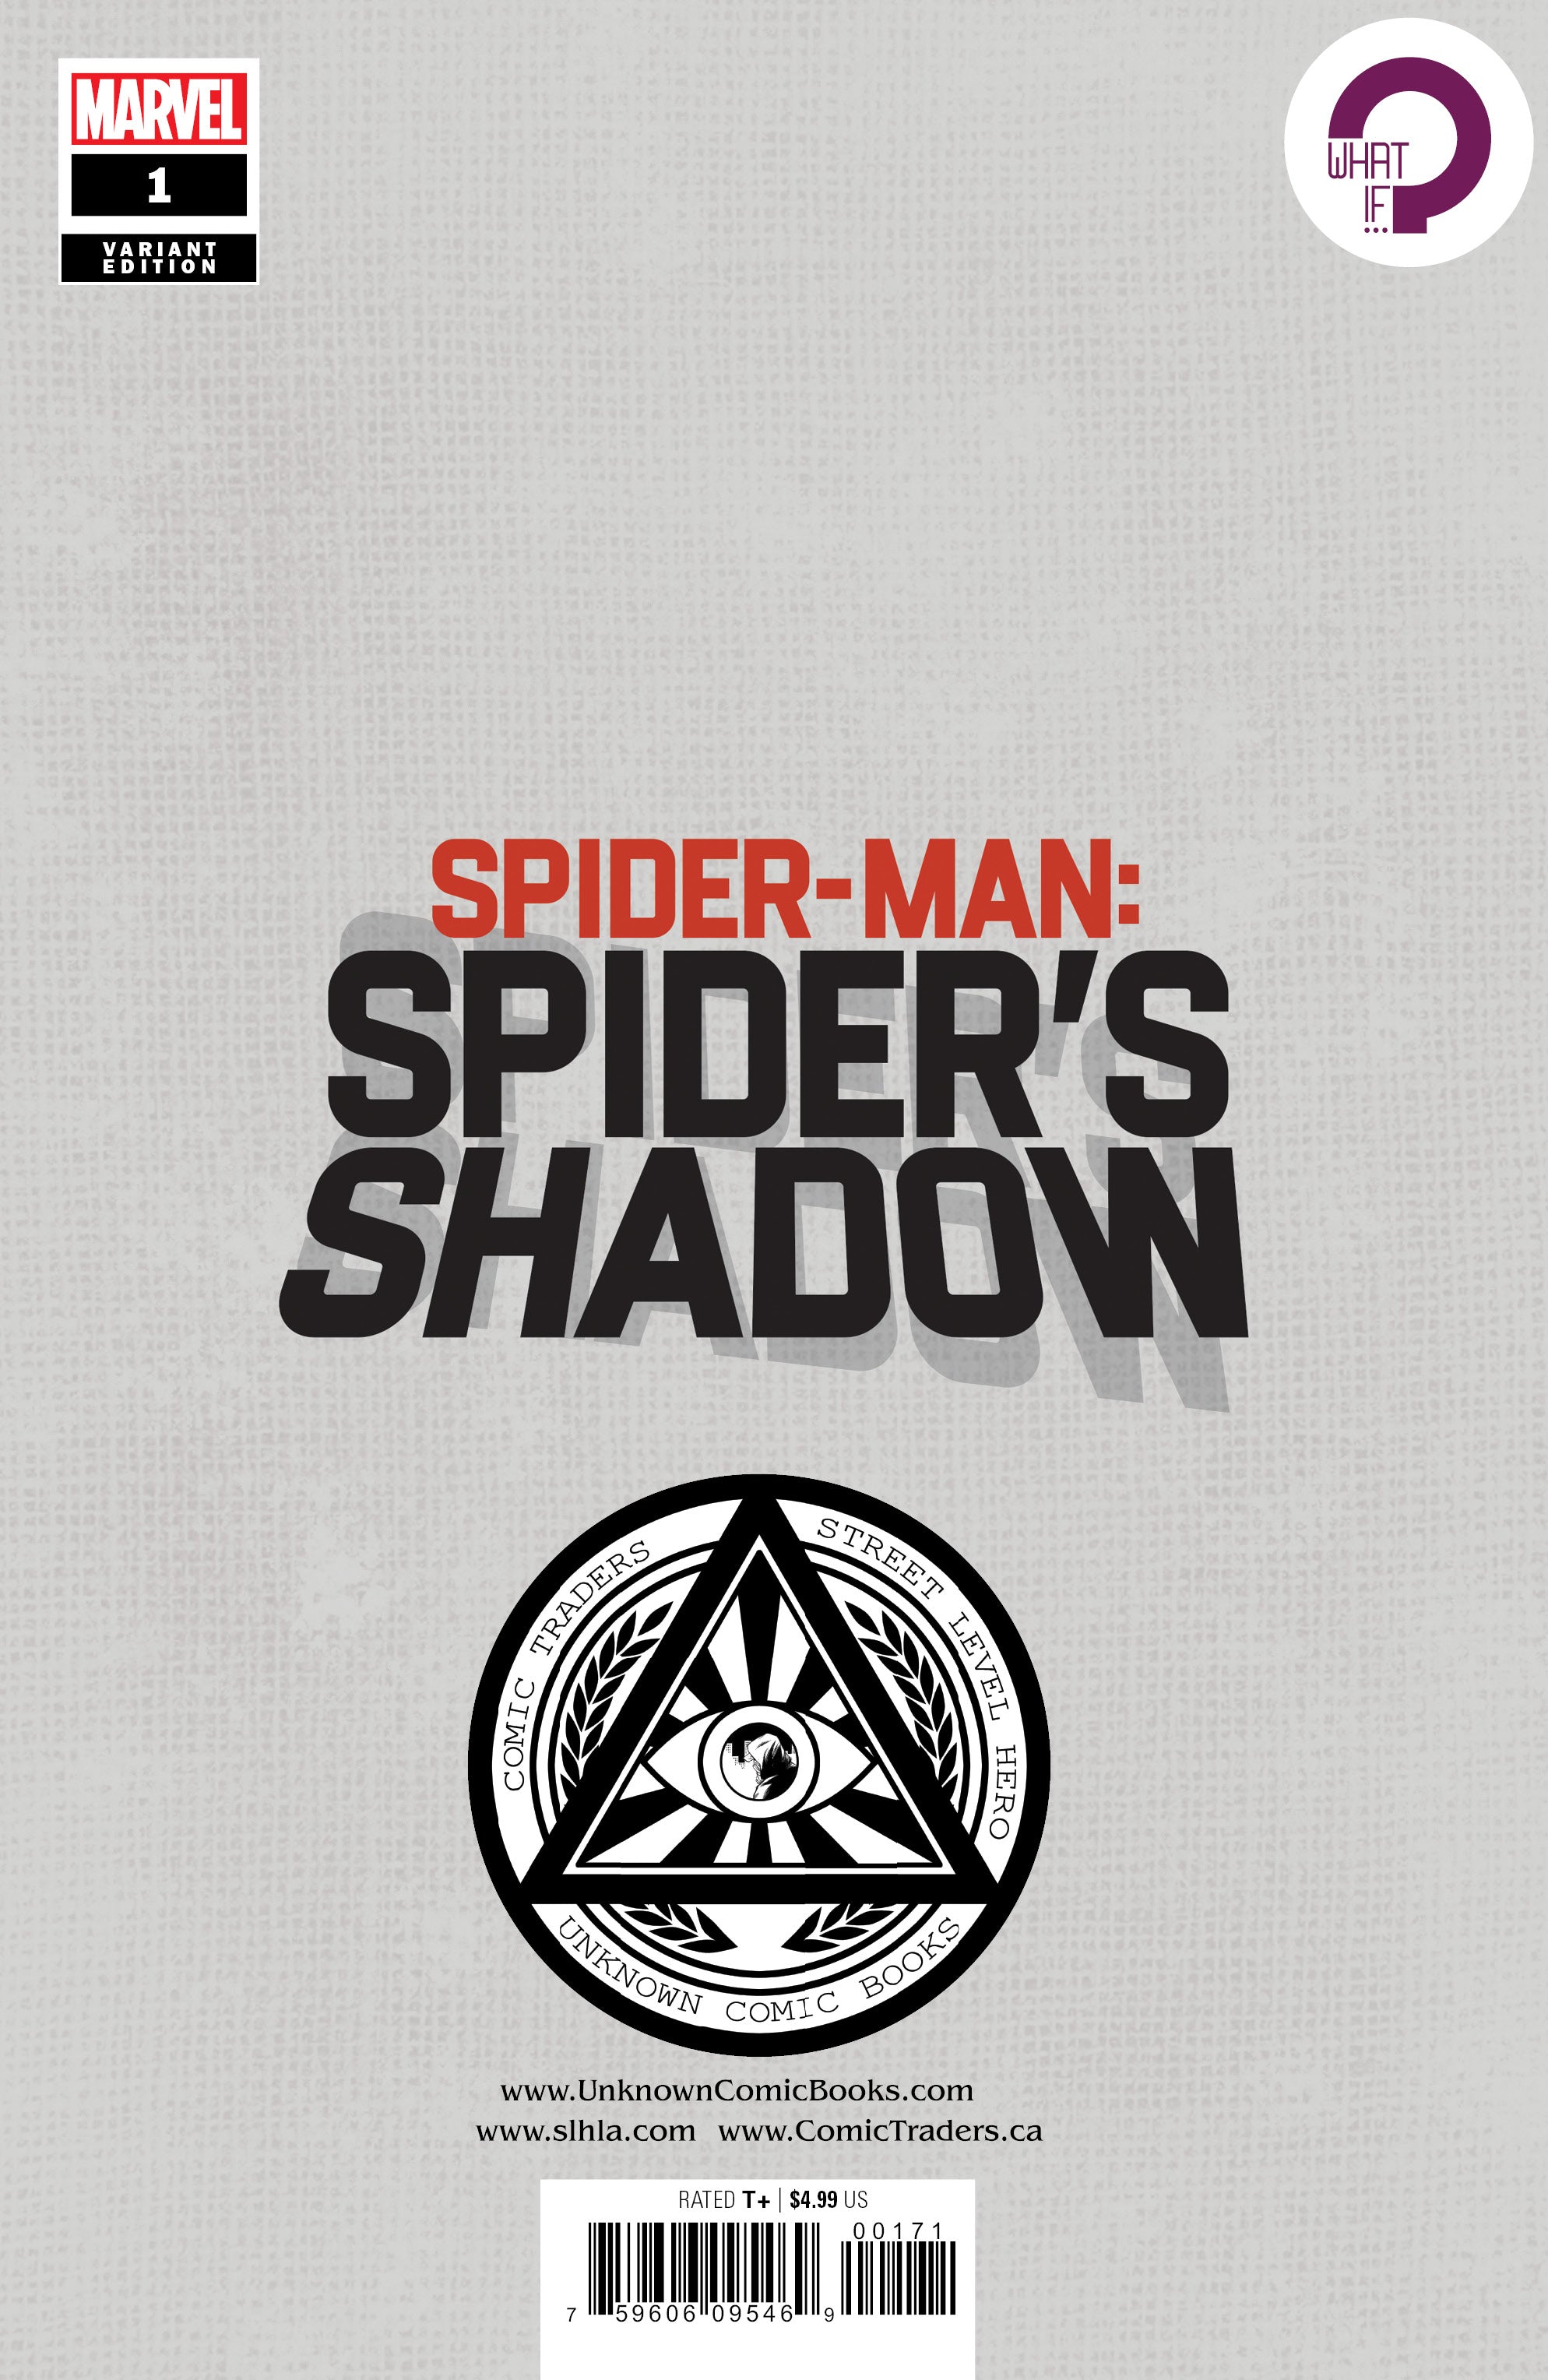 SPIDER-MAN SPIDERS SHADOW #1 (OF 4) UNKNOWN COMICS MIGUEL MERCADO EXCLUSIVE VIRGIN VAR (04/14/2021)